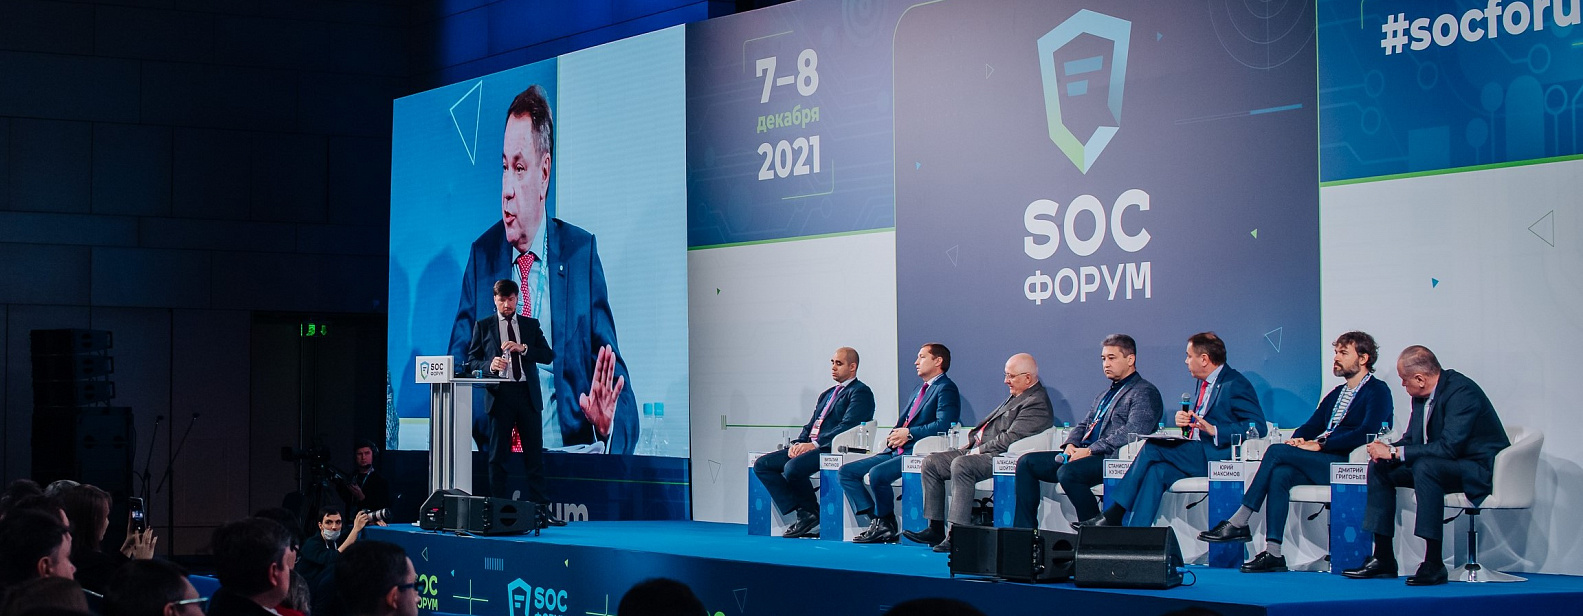 SOC-Форум 2021 – о чем говорили киберэксперты